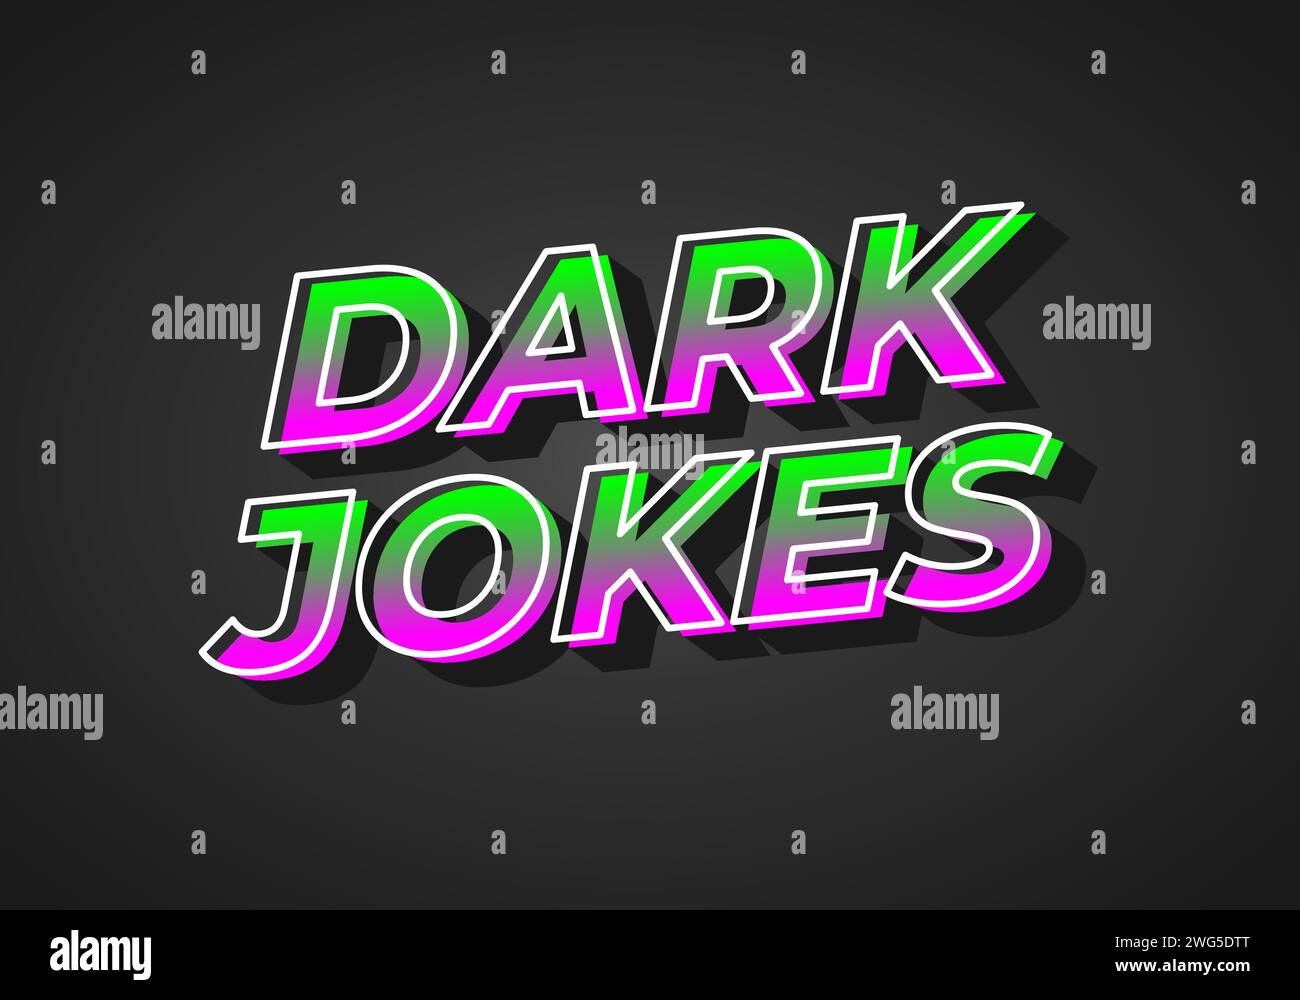 Dunkle Witze. Texteffekt-Design im 3D-Look. Verlaufende lila grüne Farbe. Dunkler Hintergrund Stock Vektor